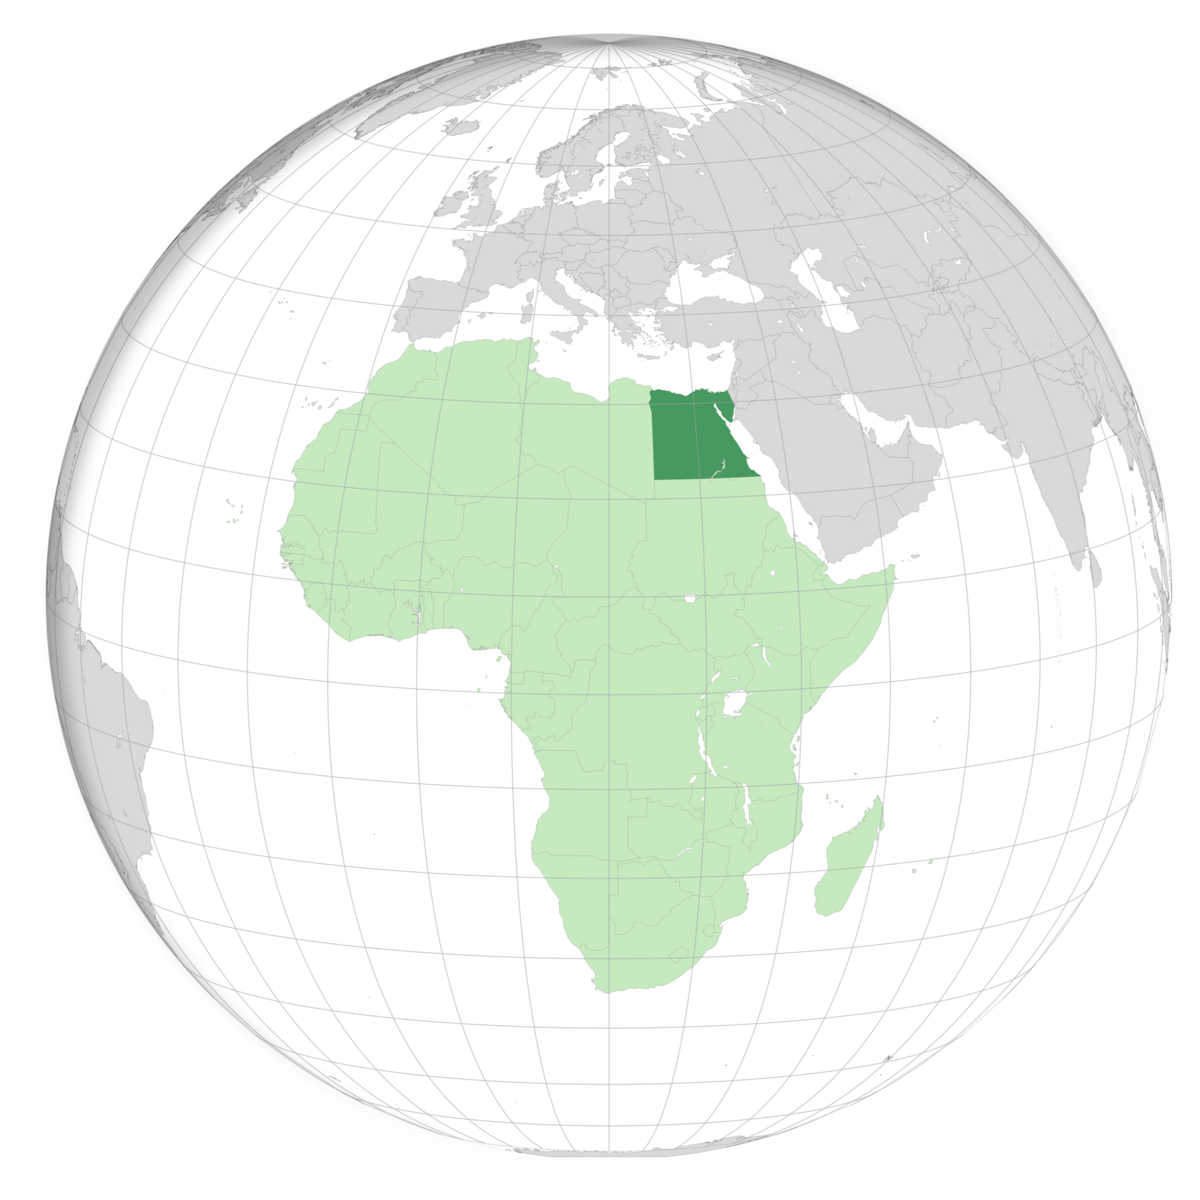 plassering av Egypt på jordkloden. Kart